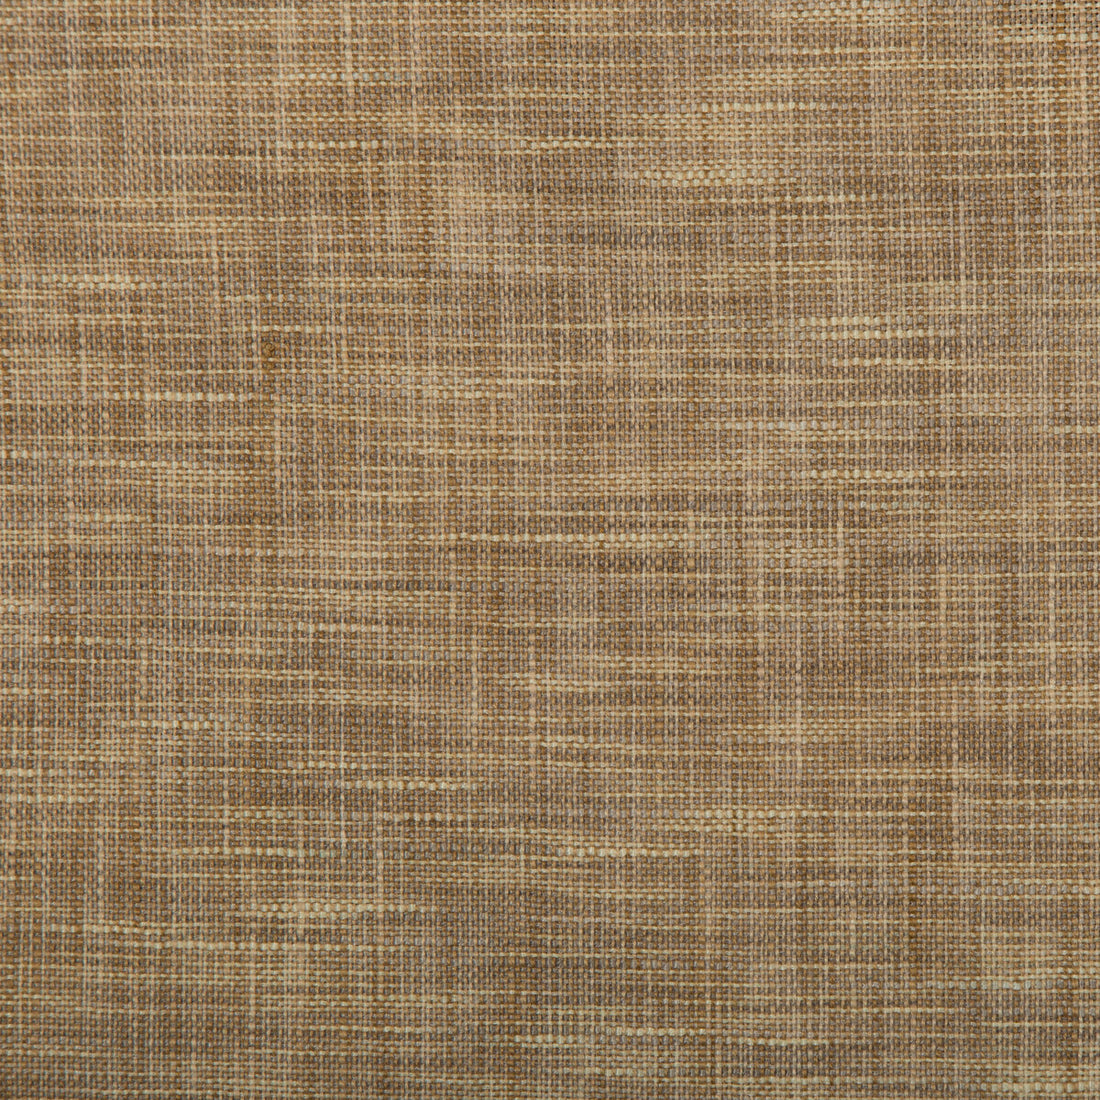 Kravet Basics fabric in 4668-16 color - pattern 4668.16.0 - by Kravet Basics